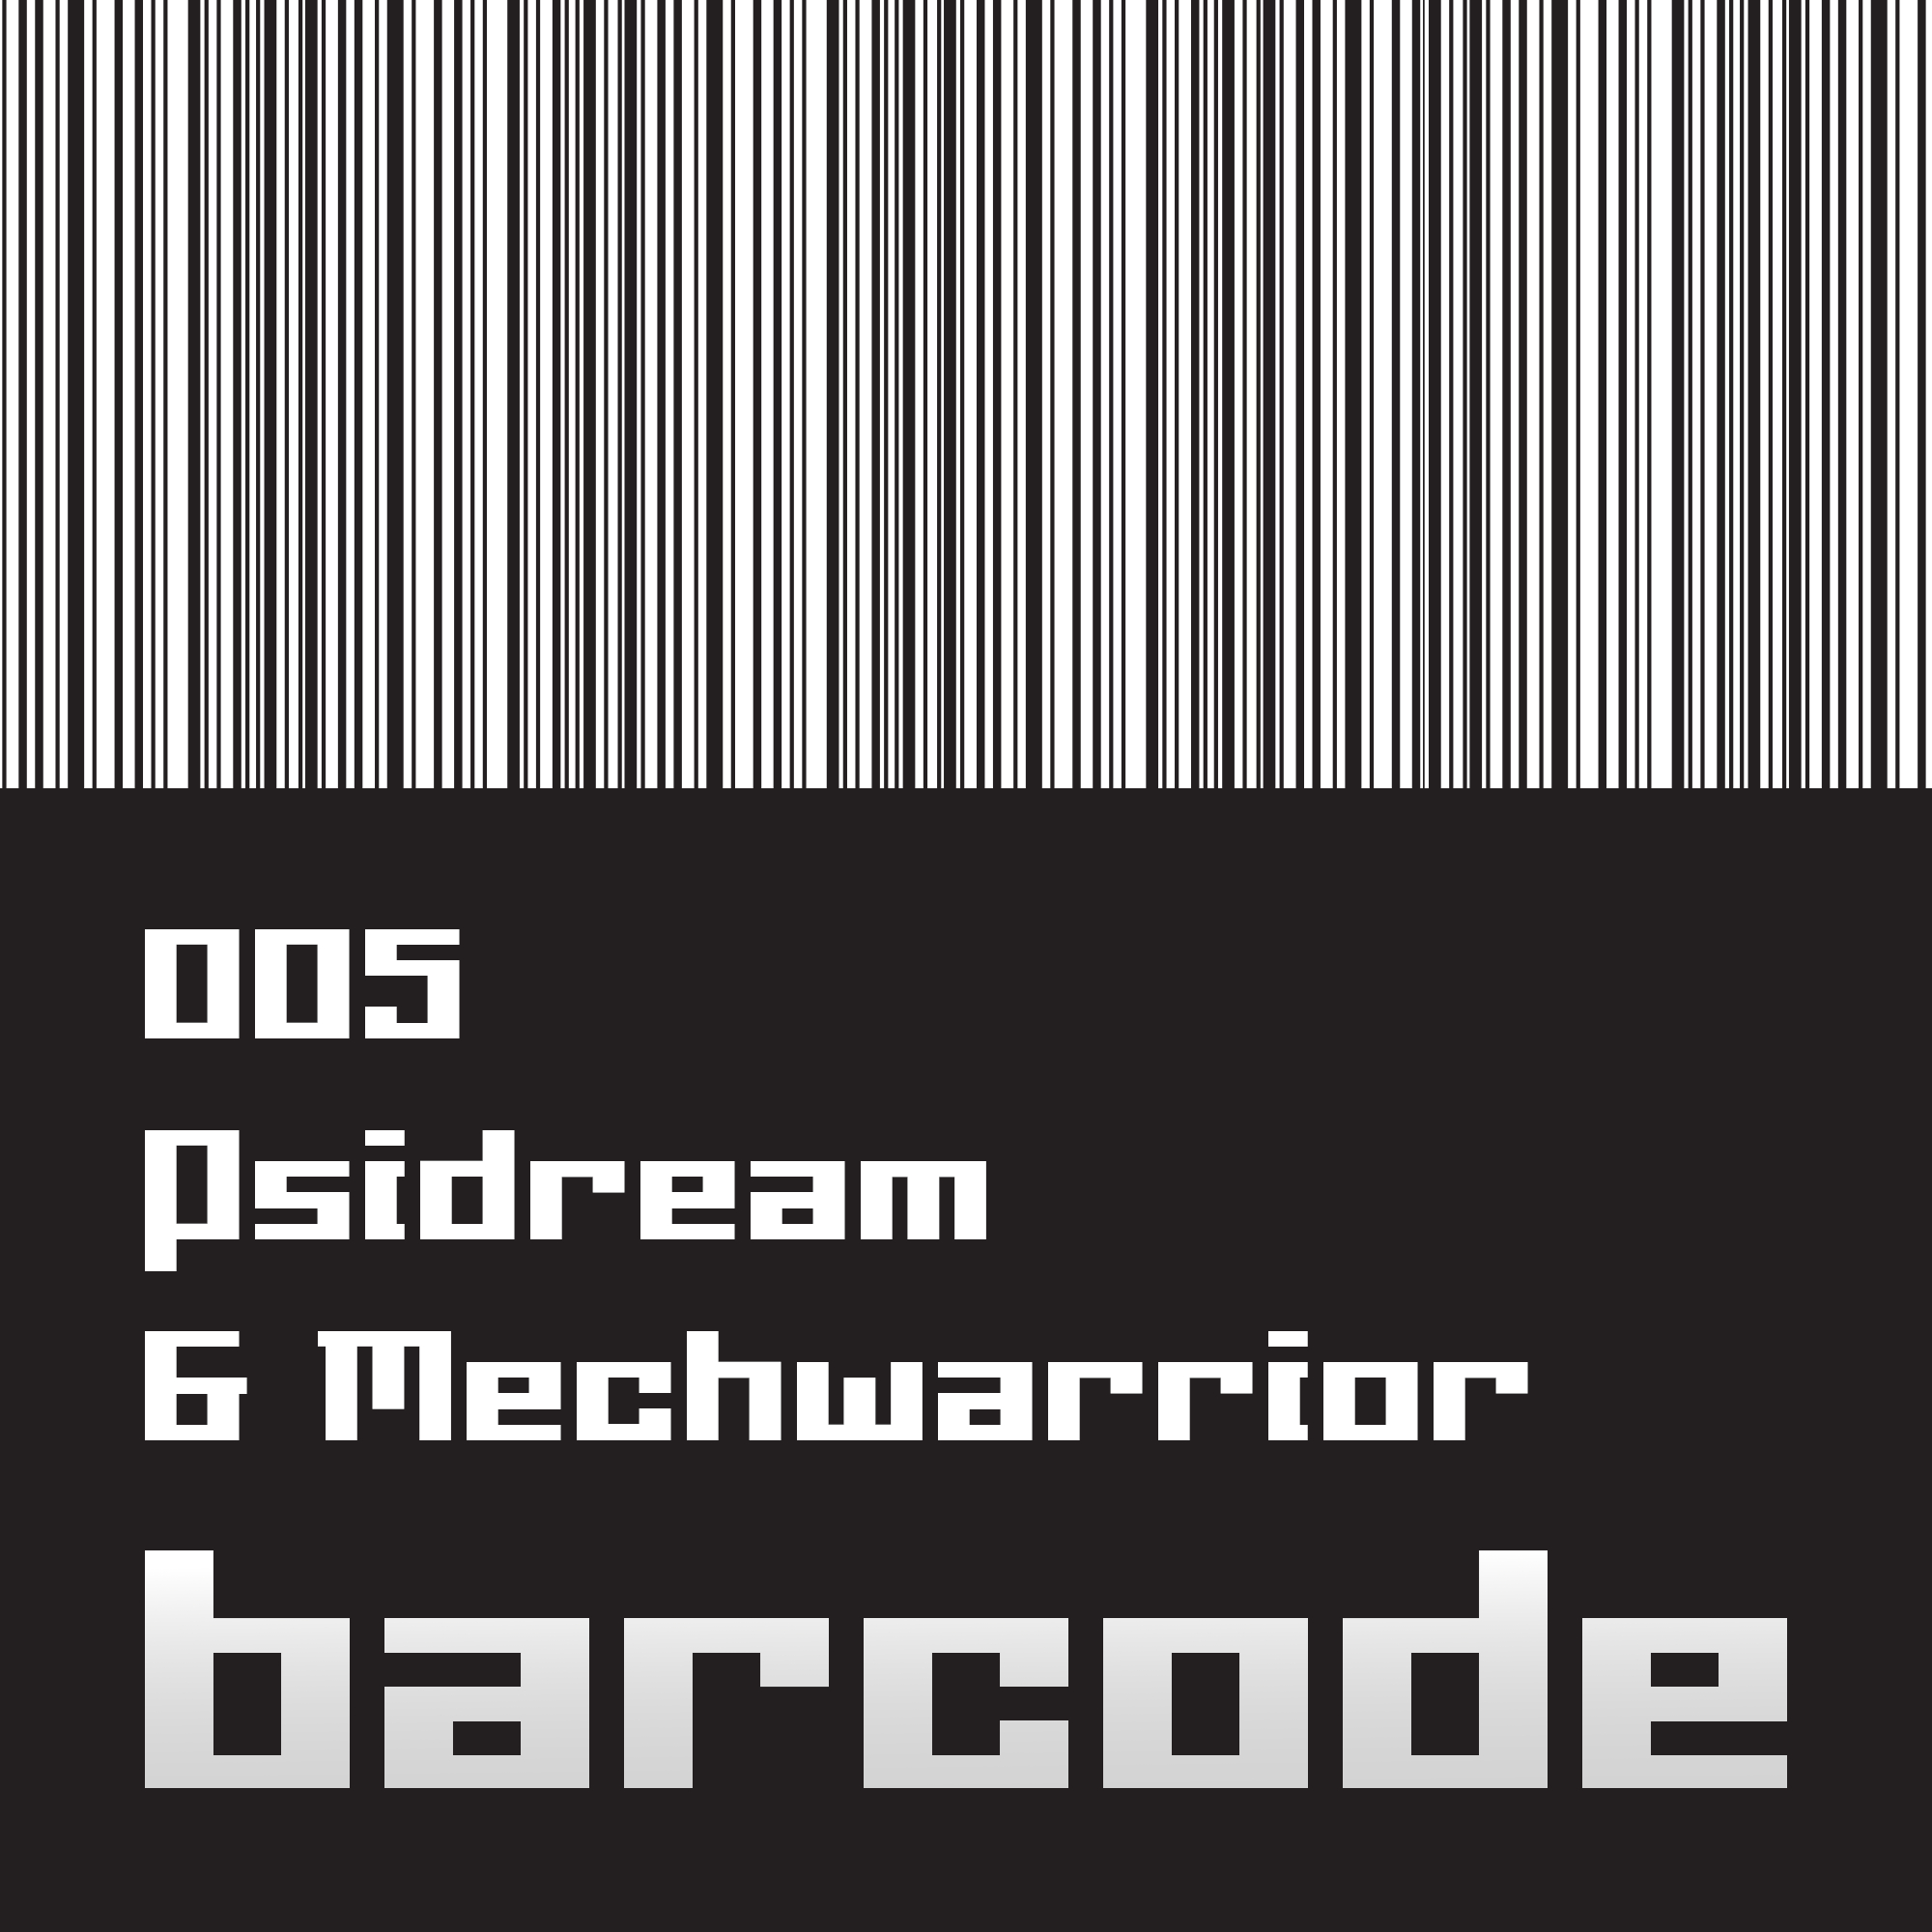 Barcode005.jpg